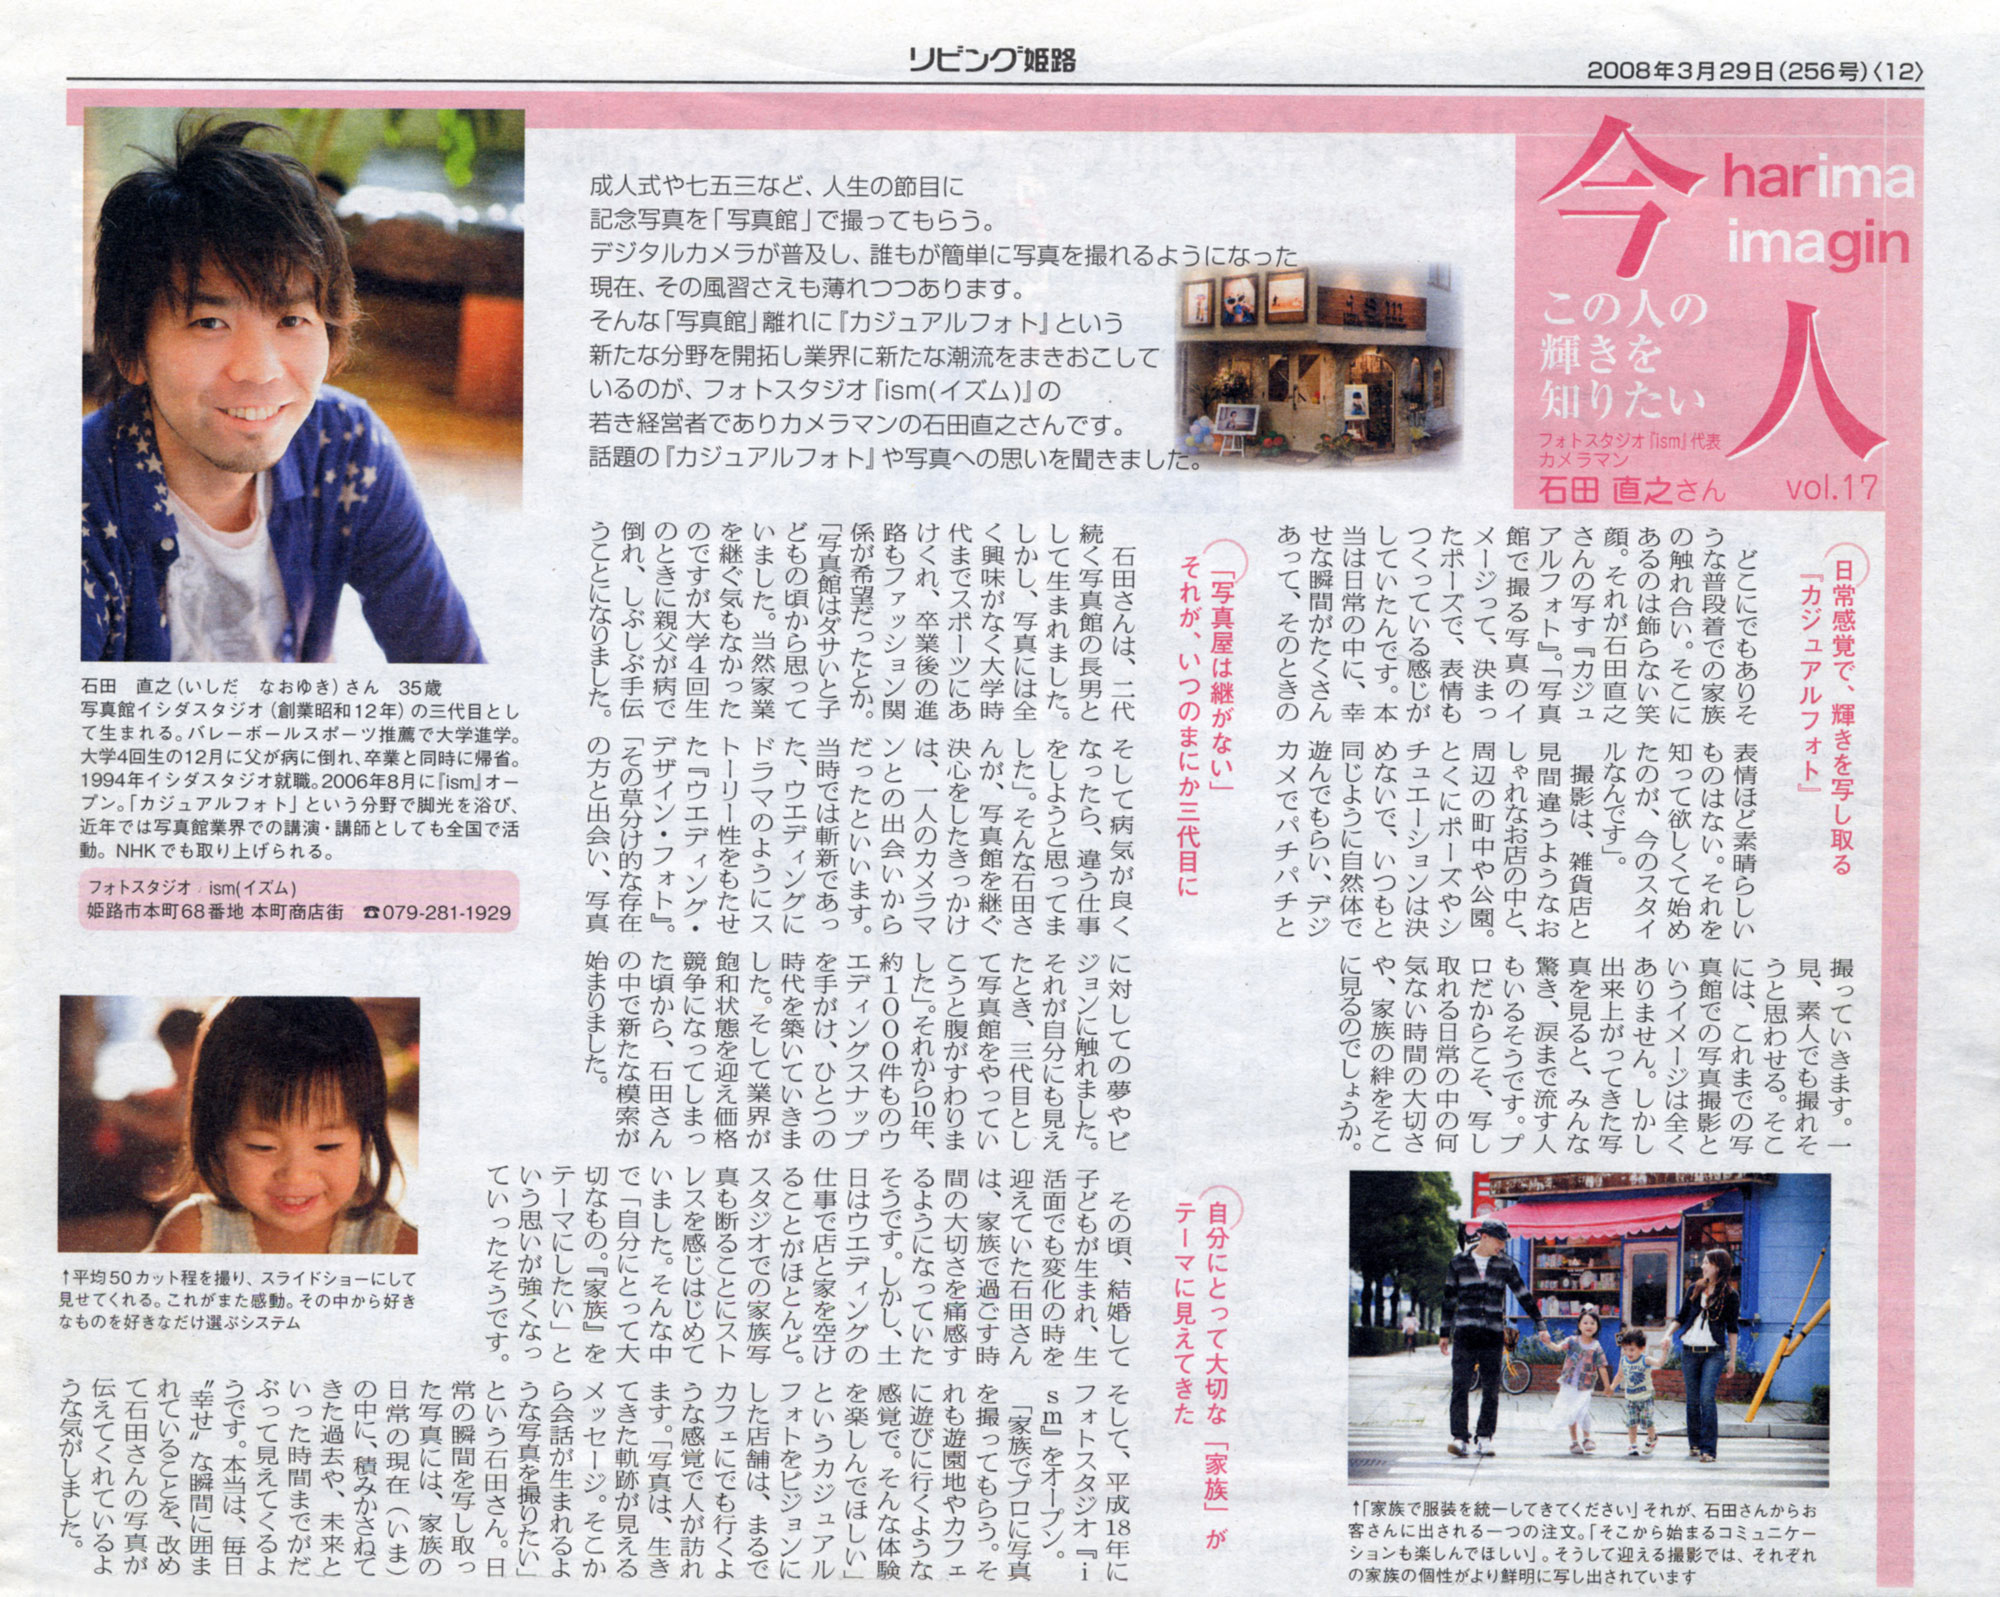 「播磨リビング新聞」に石田が取材掲載されました。